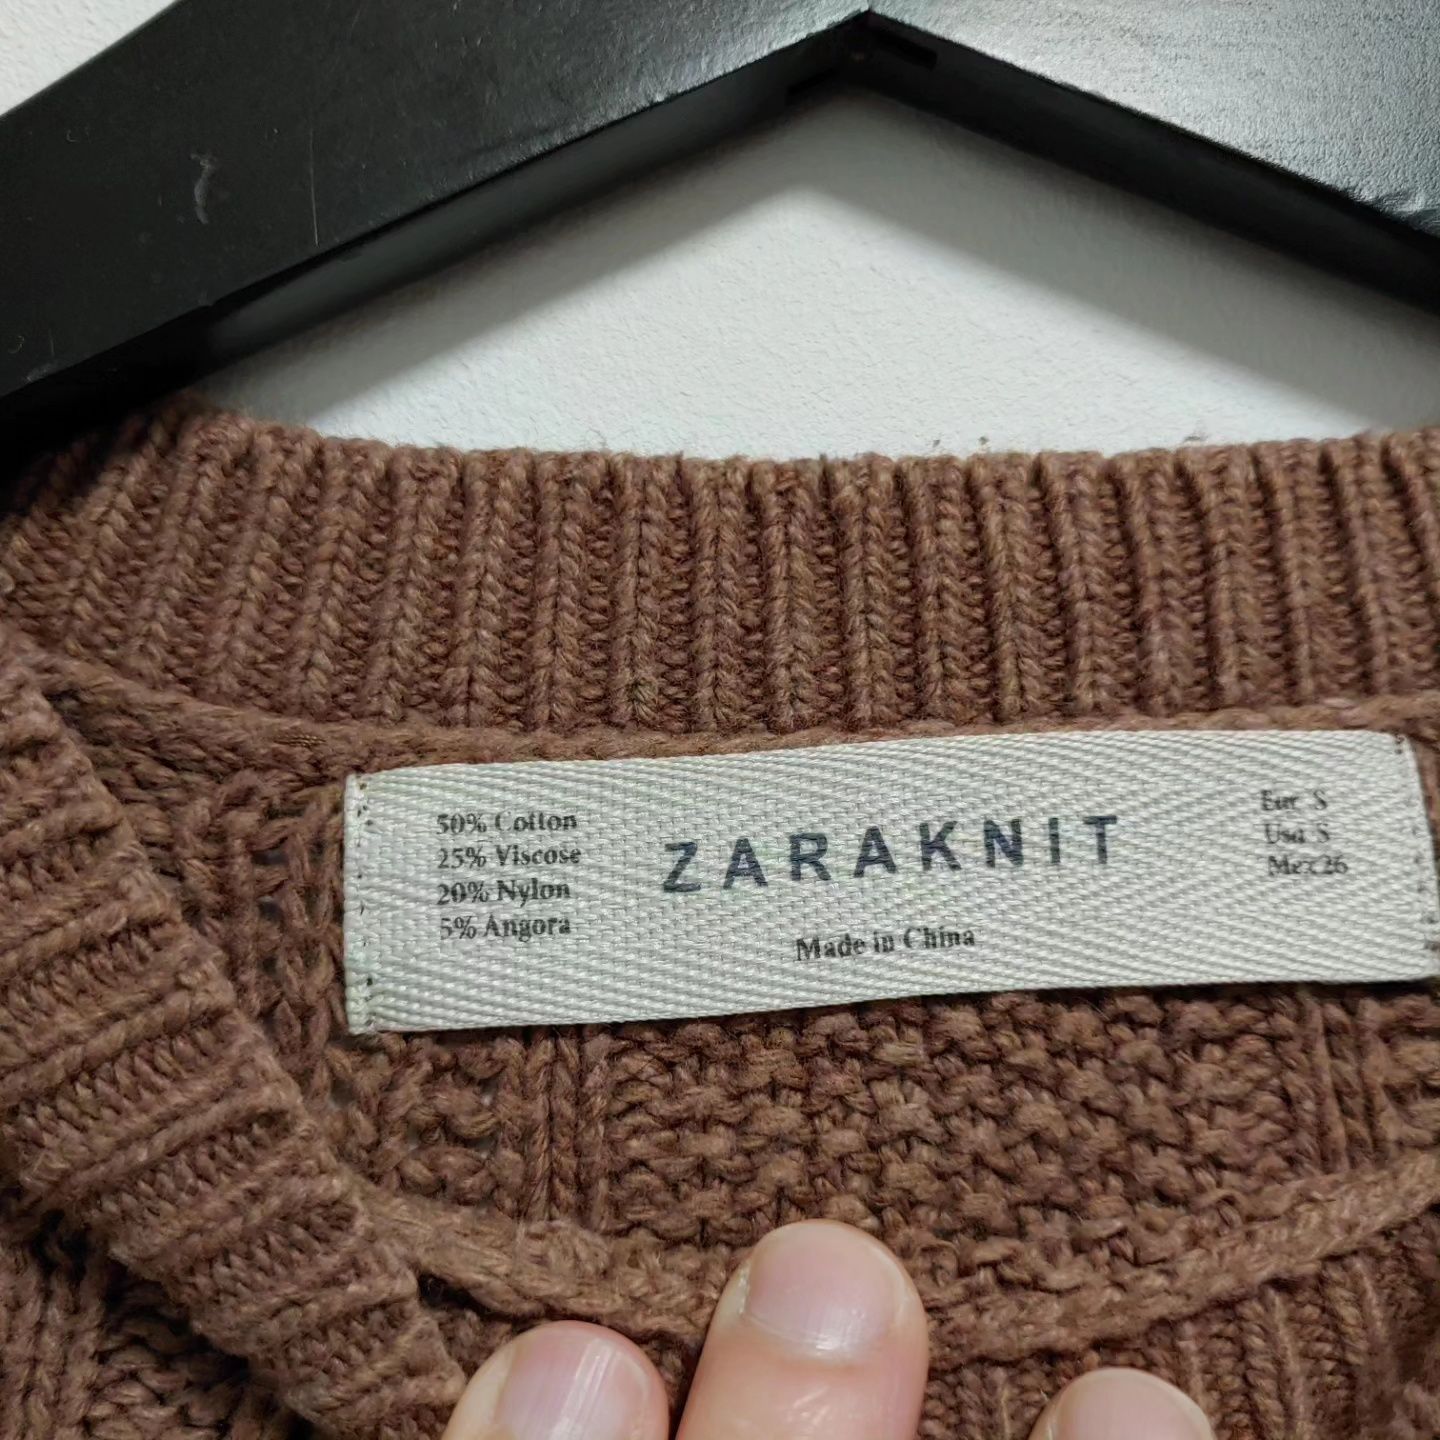 Camisola castanha, Zara, tamanho S